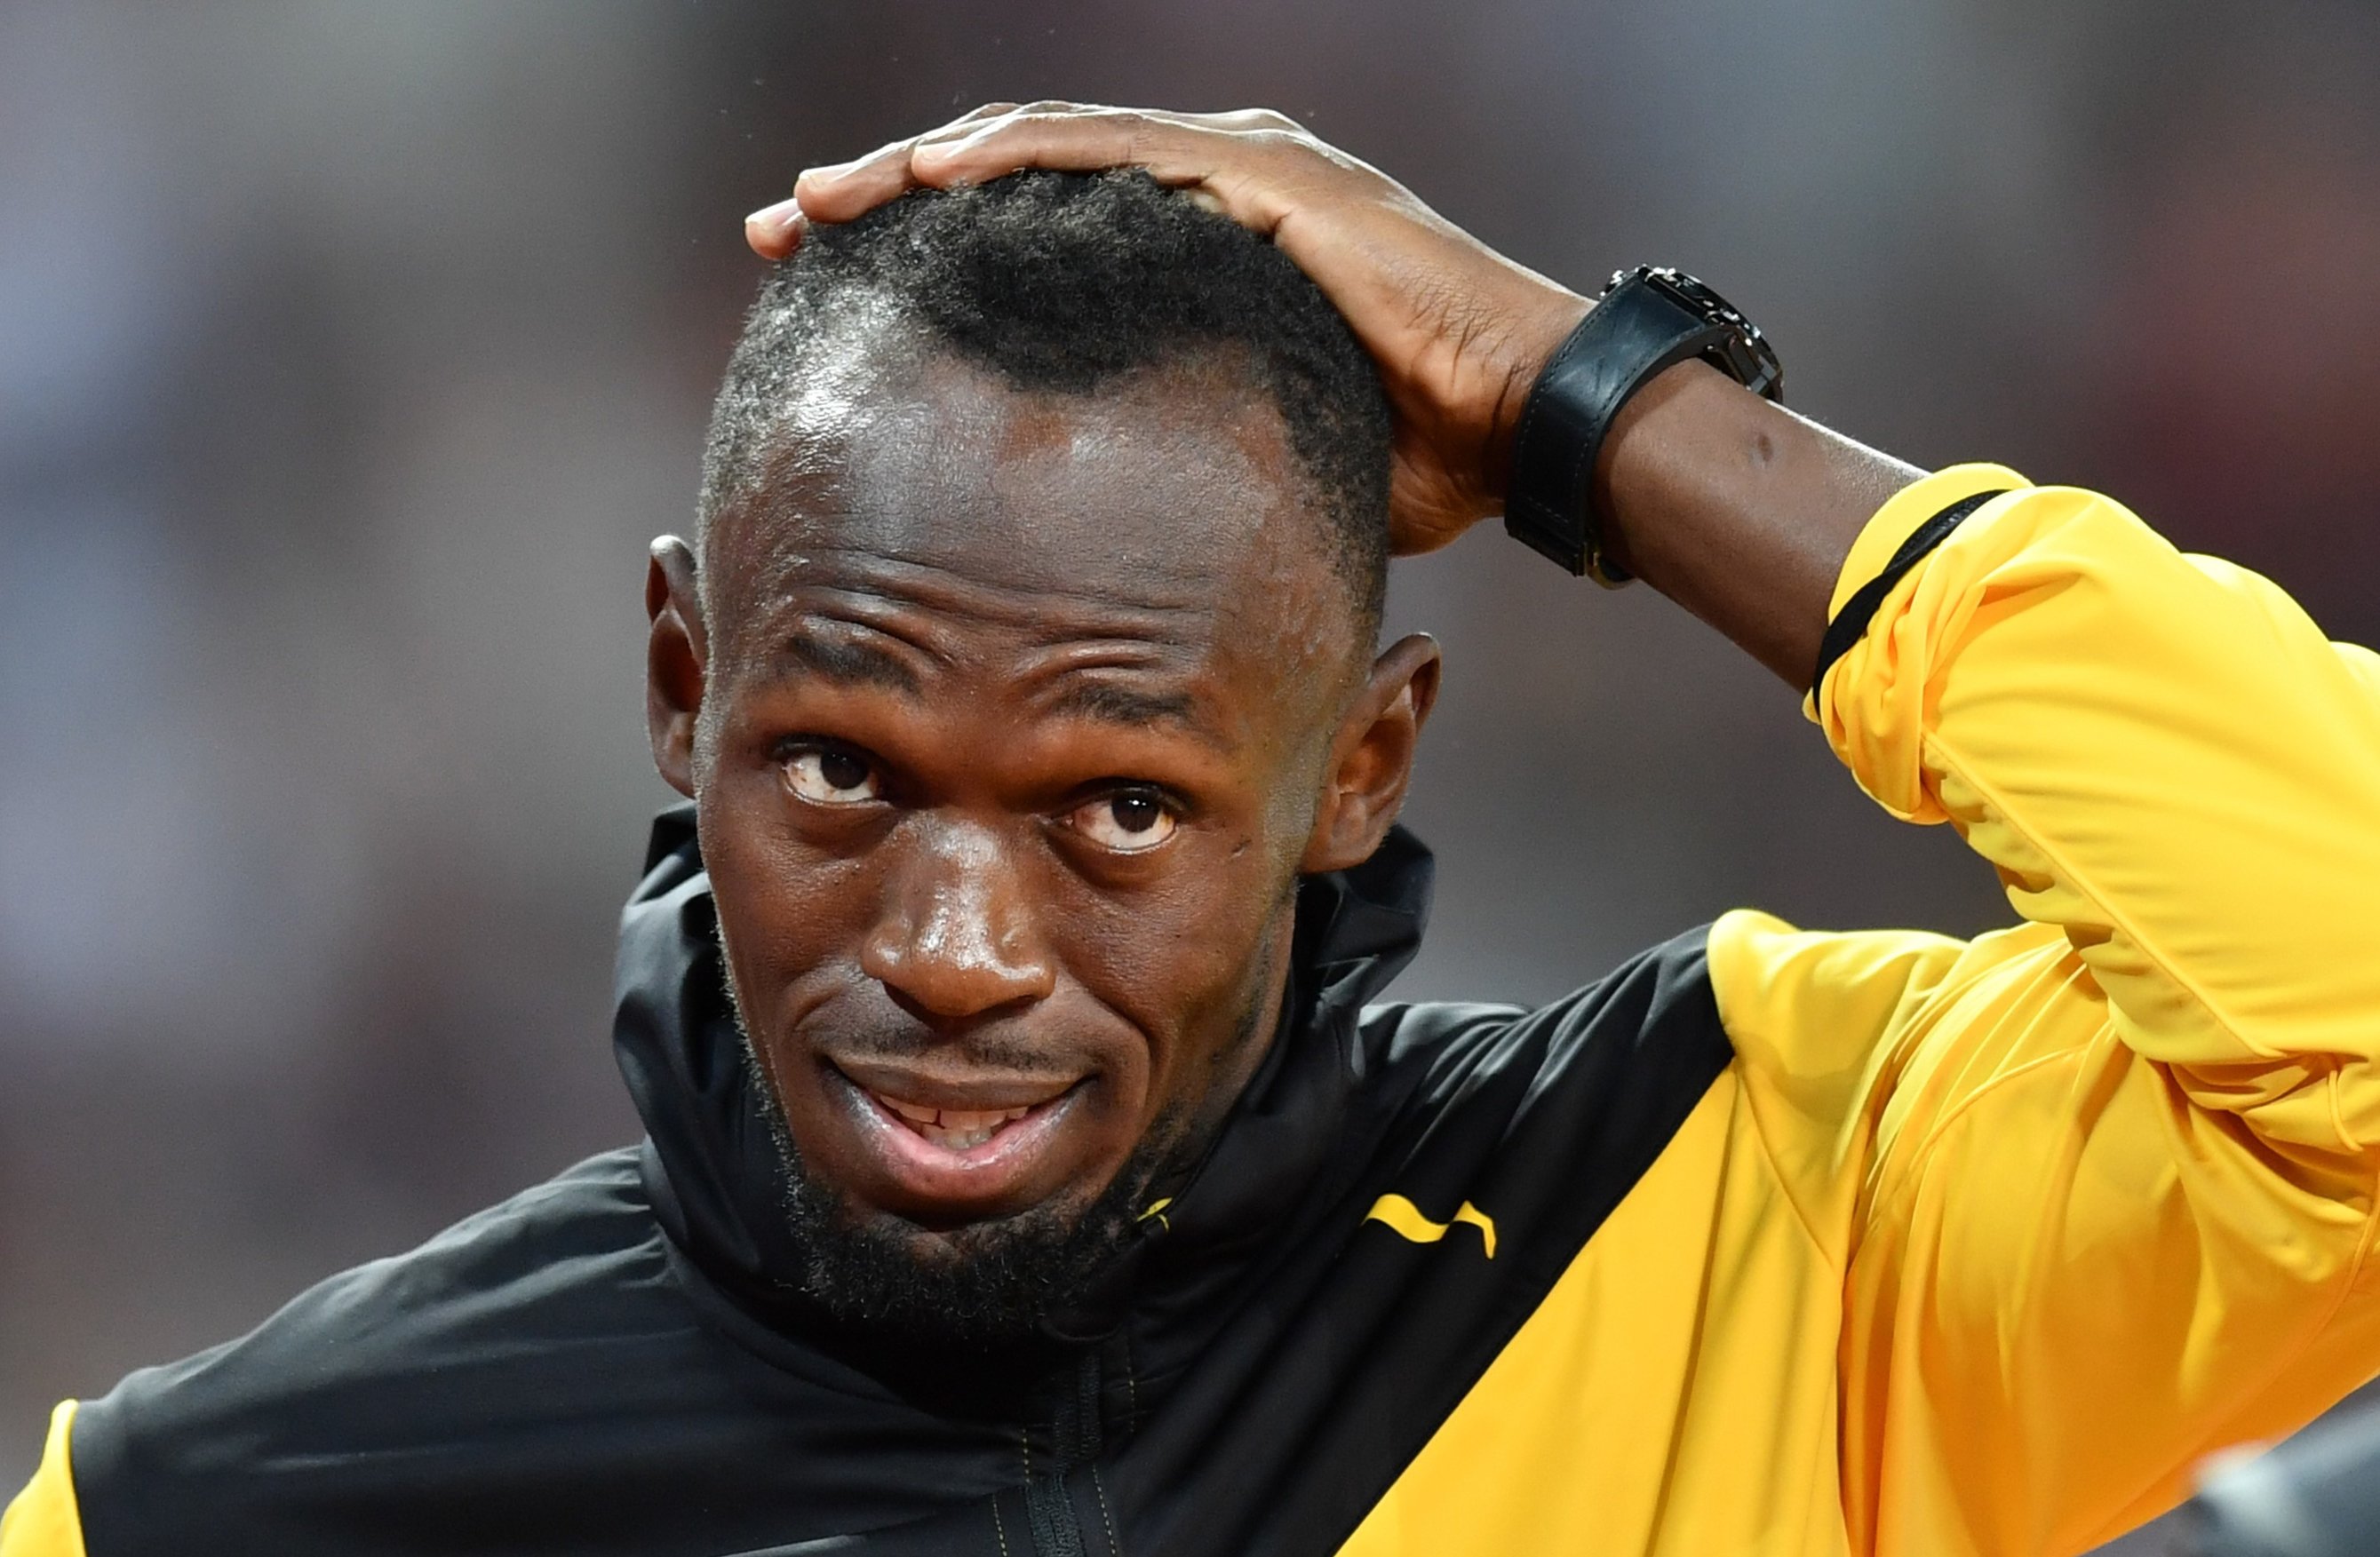 Usain Bolt a fost testat pozitiv pentru Covid-19. Coronavirusul a fost mai rapid